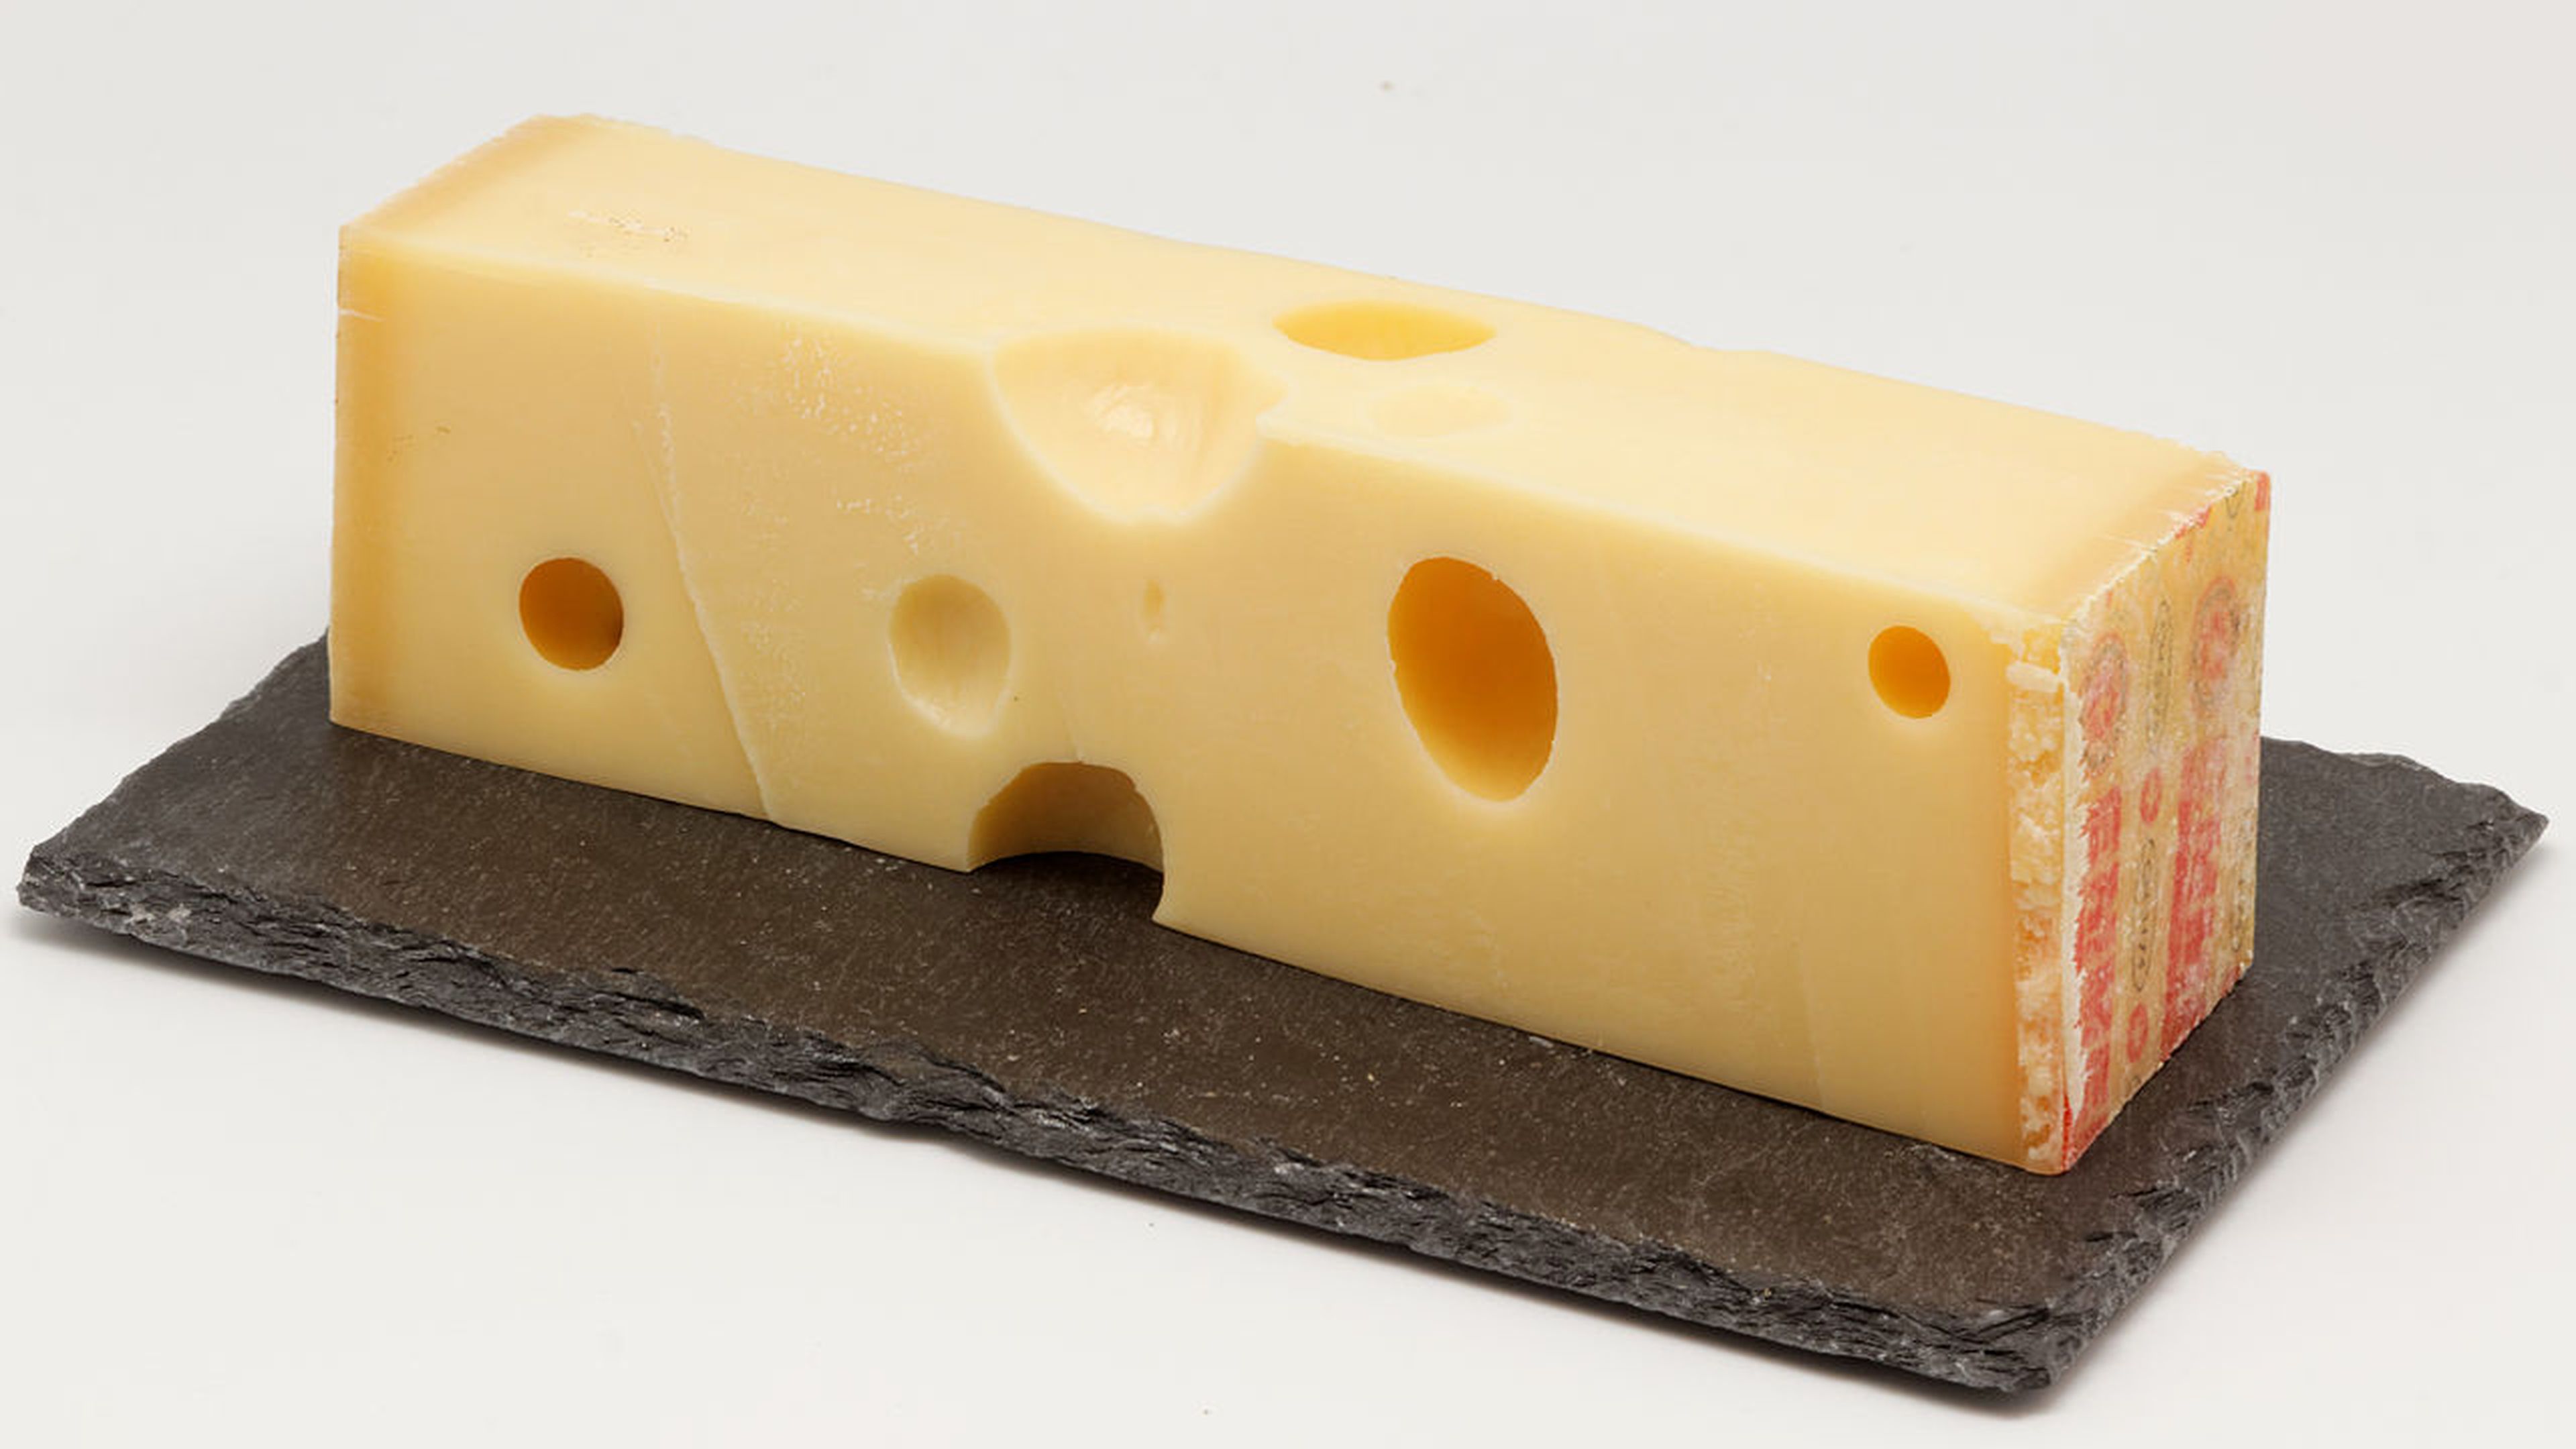 queso suizo de vaca para fondue elaborado con leche pasteurizada